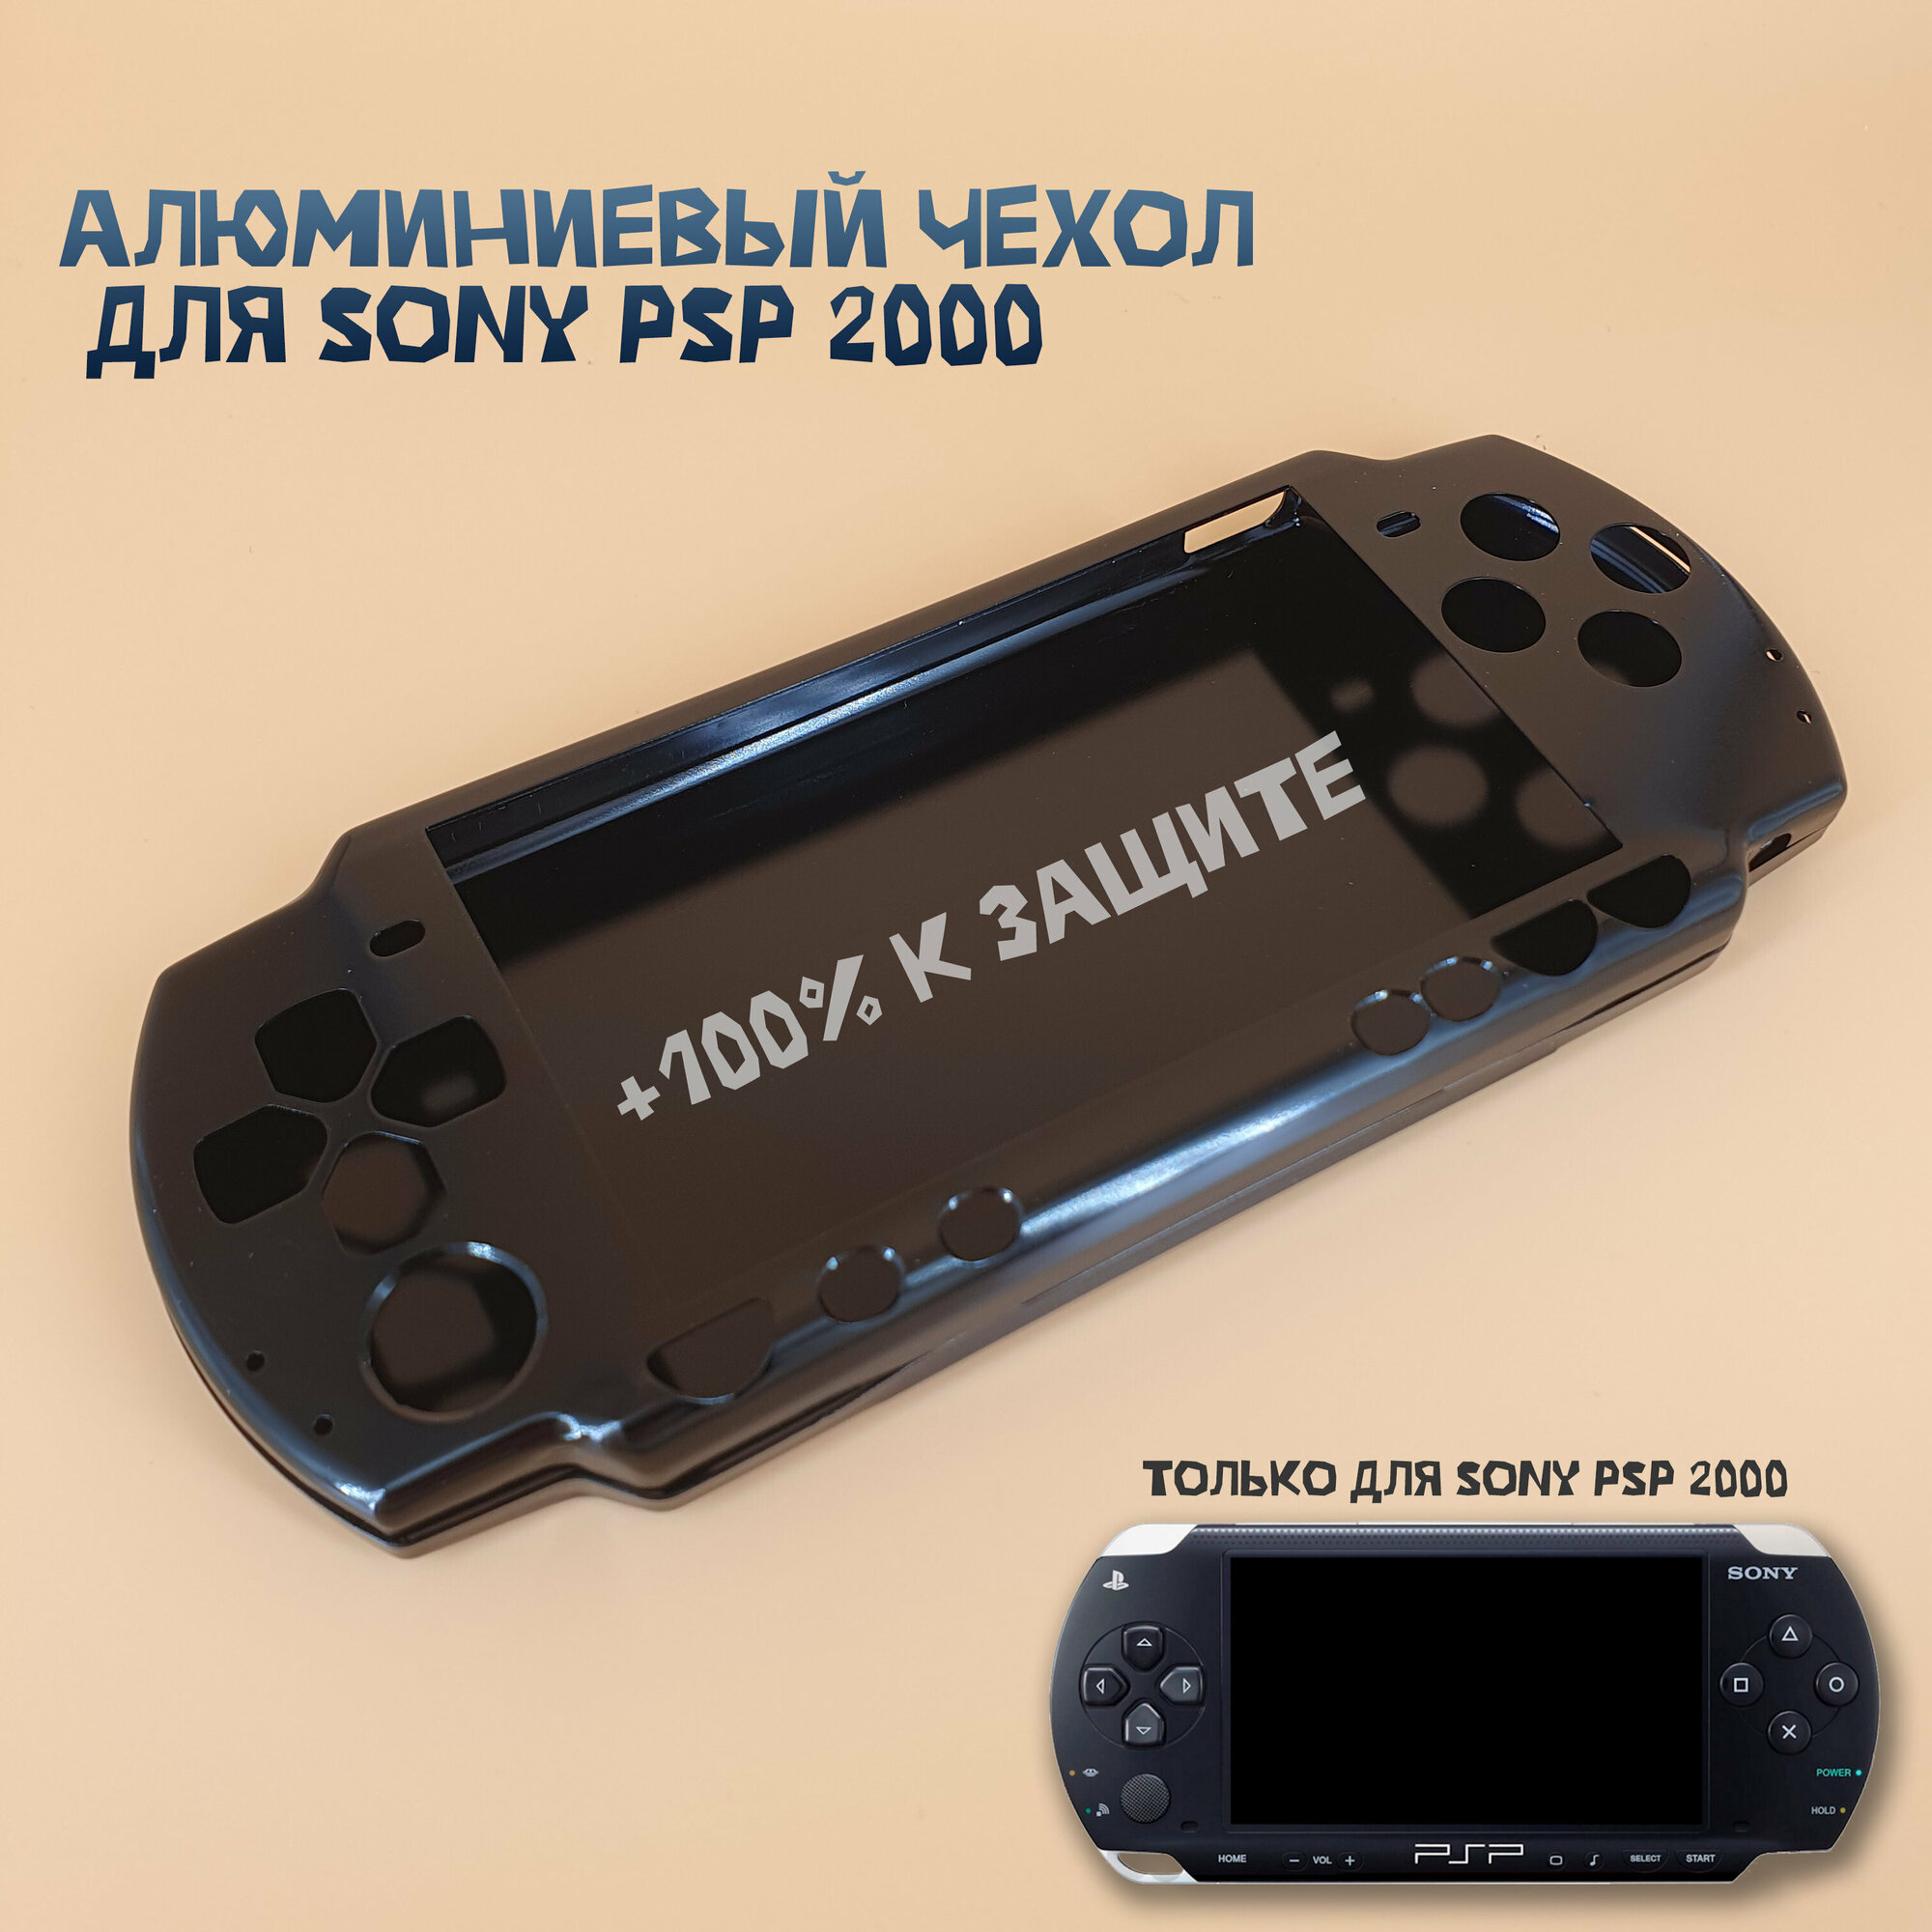 Чехол защитный алюминиевый для Sony PSP 2000, кейс для консоли очень прочный, черный